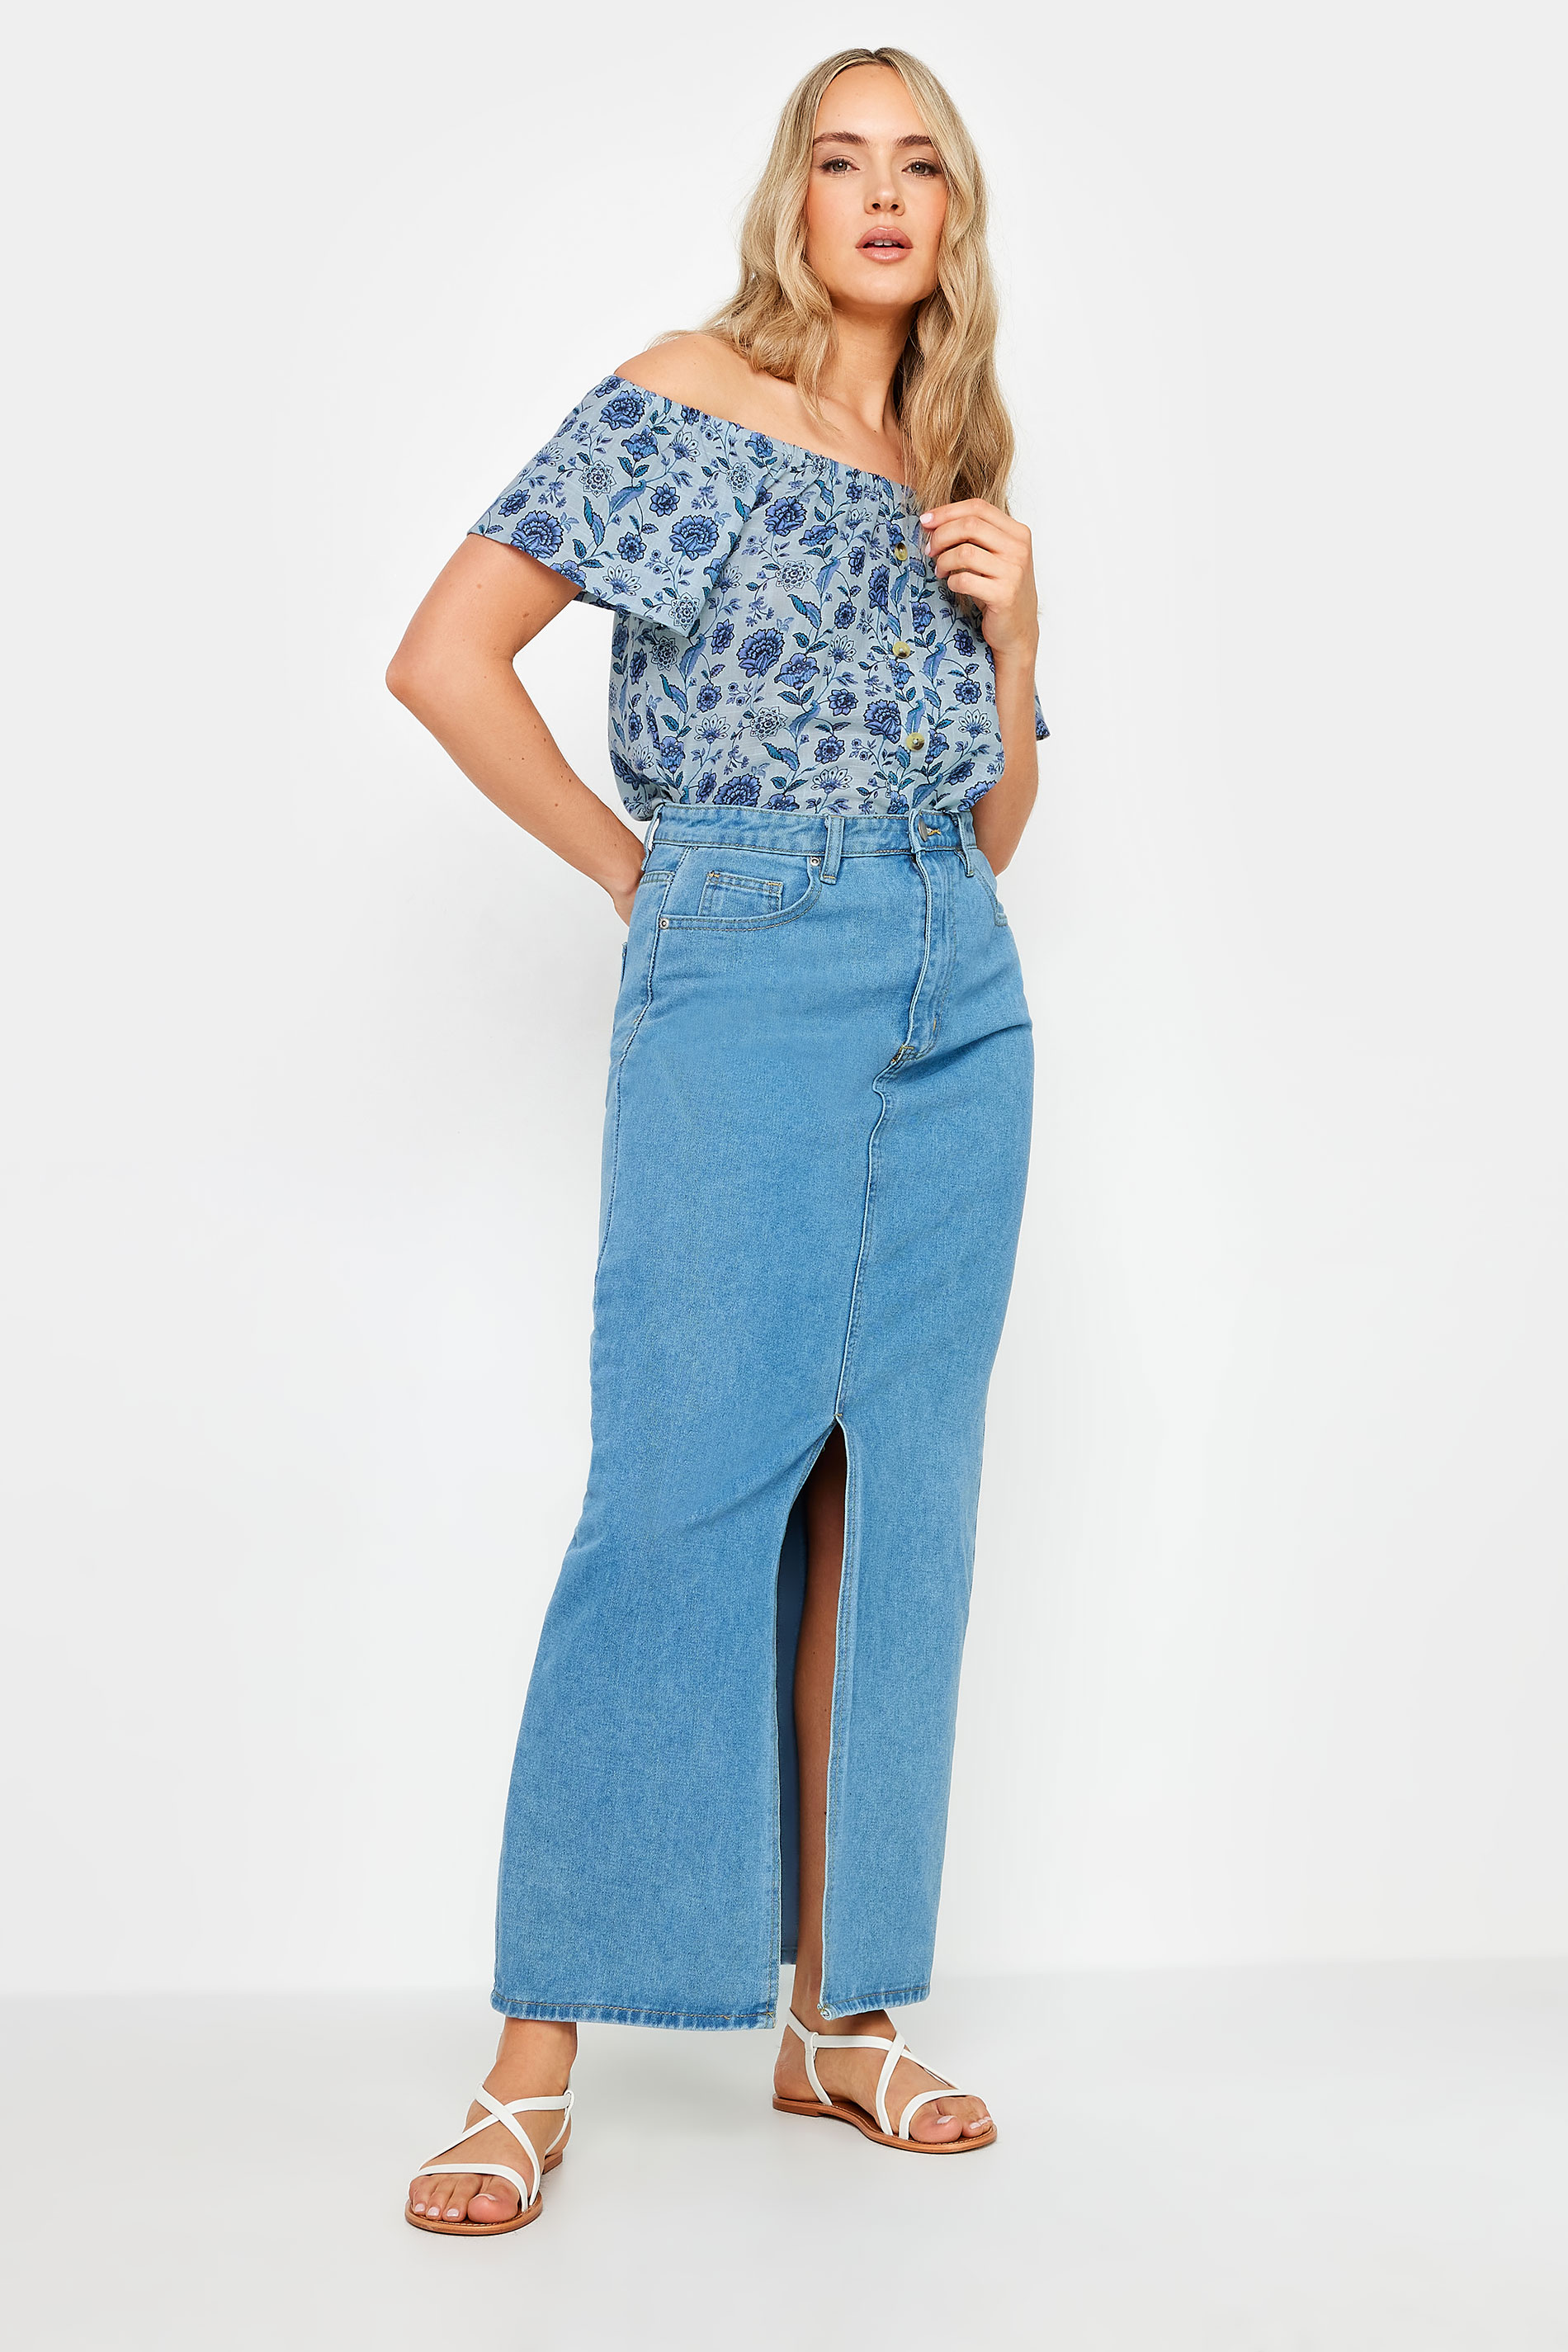 LTS Tall Women's Blue Floral Print Button Detail Bardot Top | Long Tall Sally 3